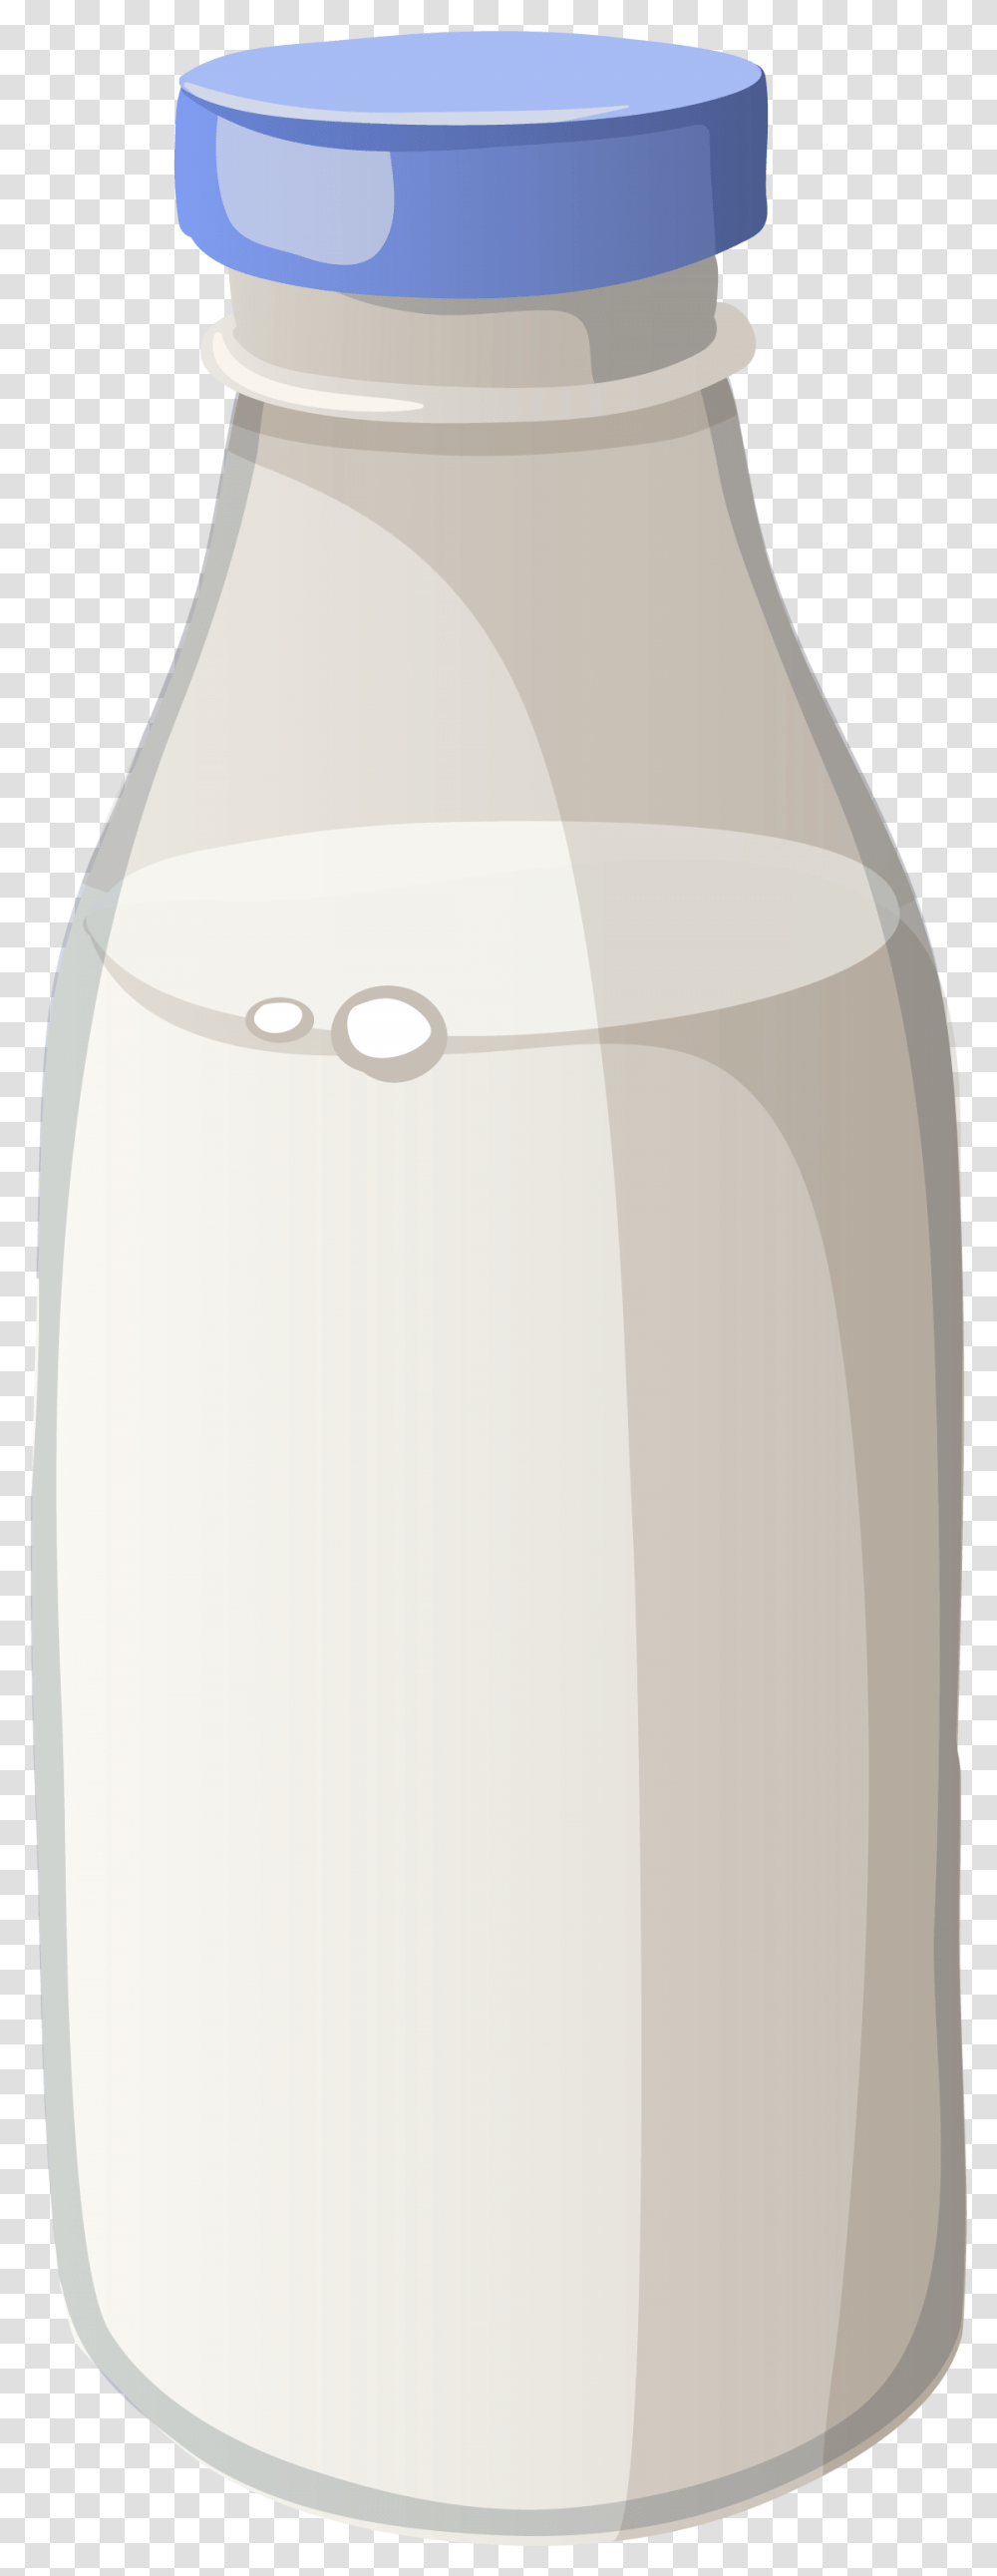 Download Free Milk Bottle Download Image Vase, Jar, Shaker Transparent Png